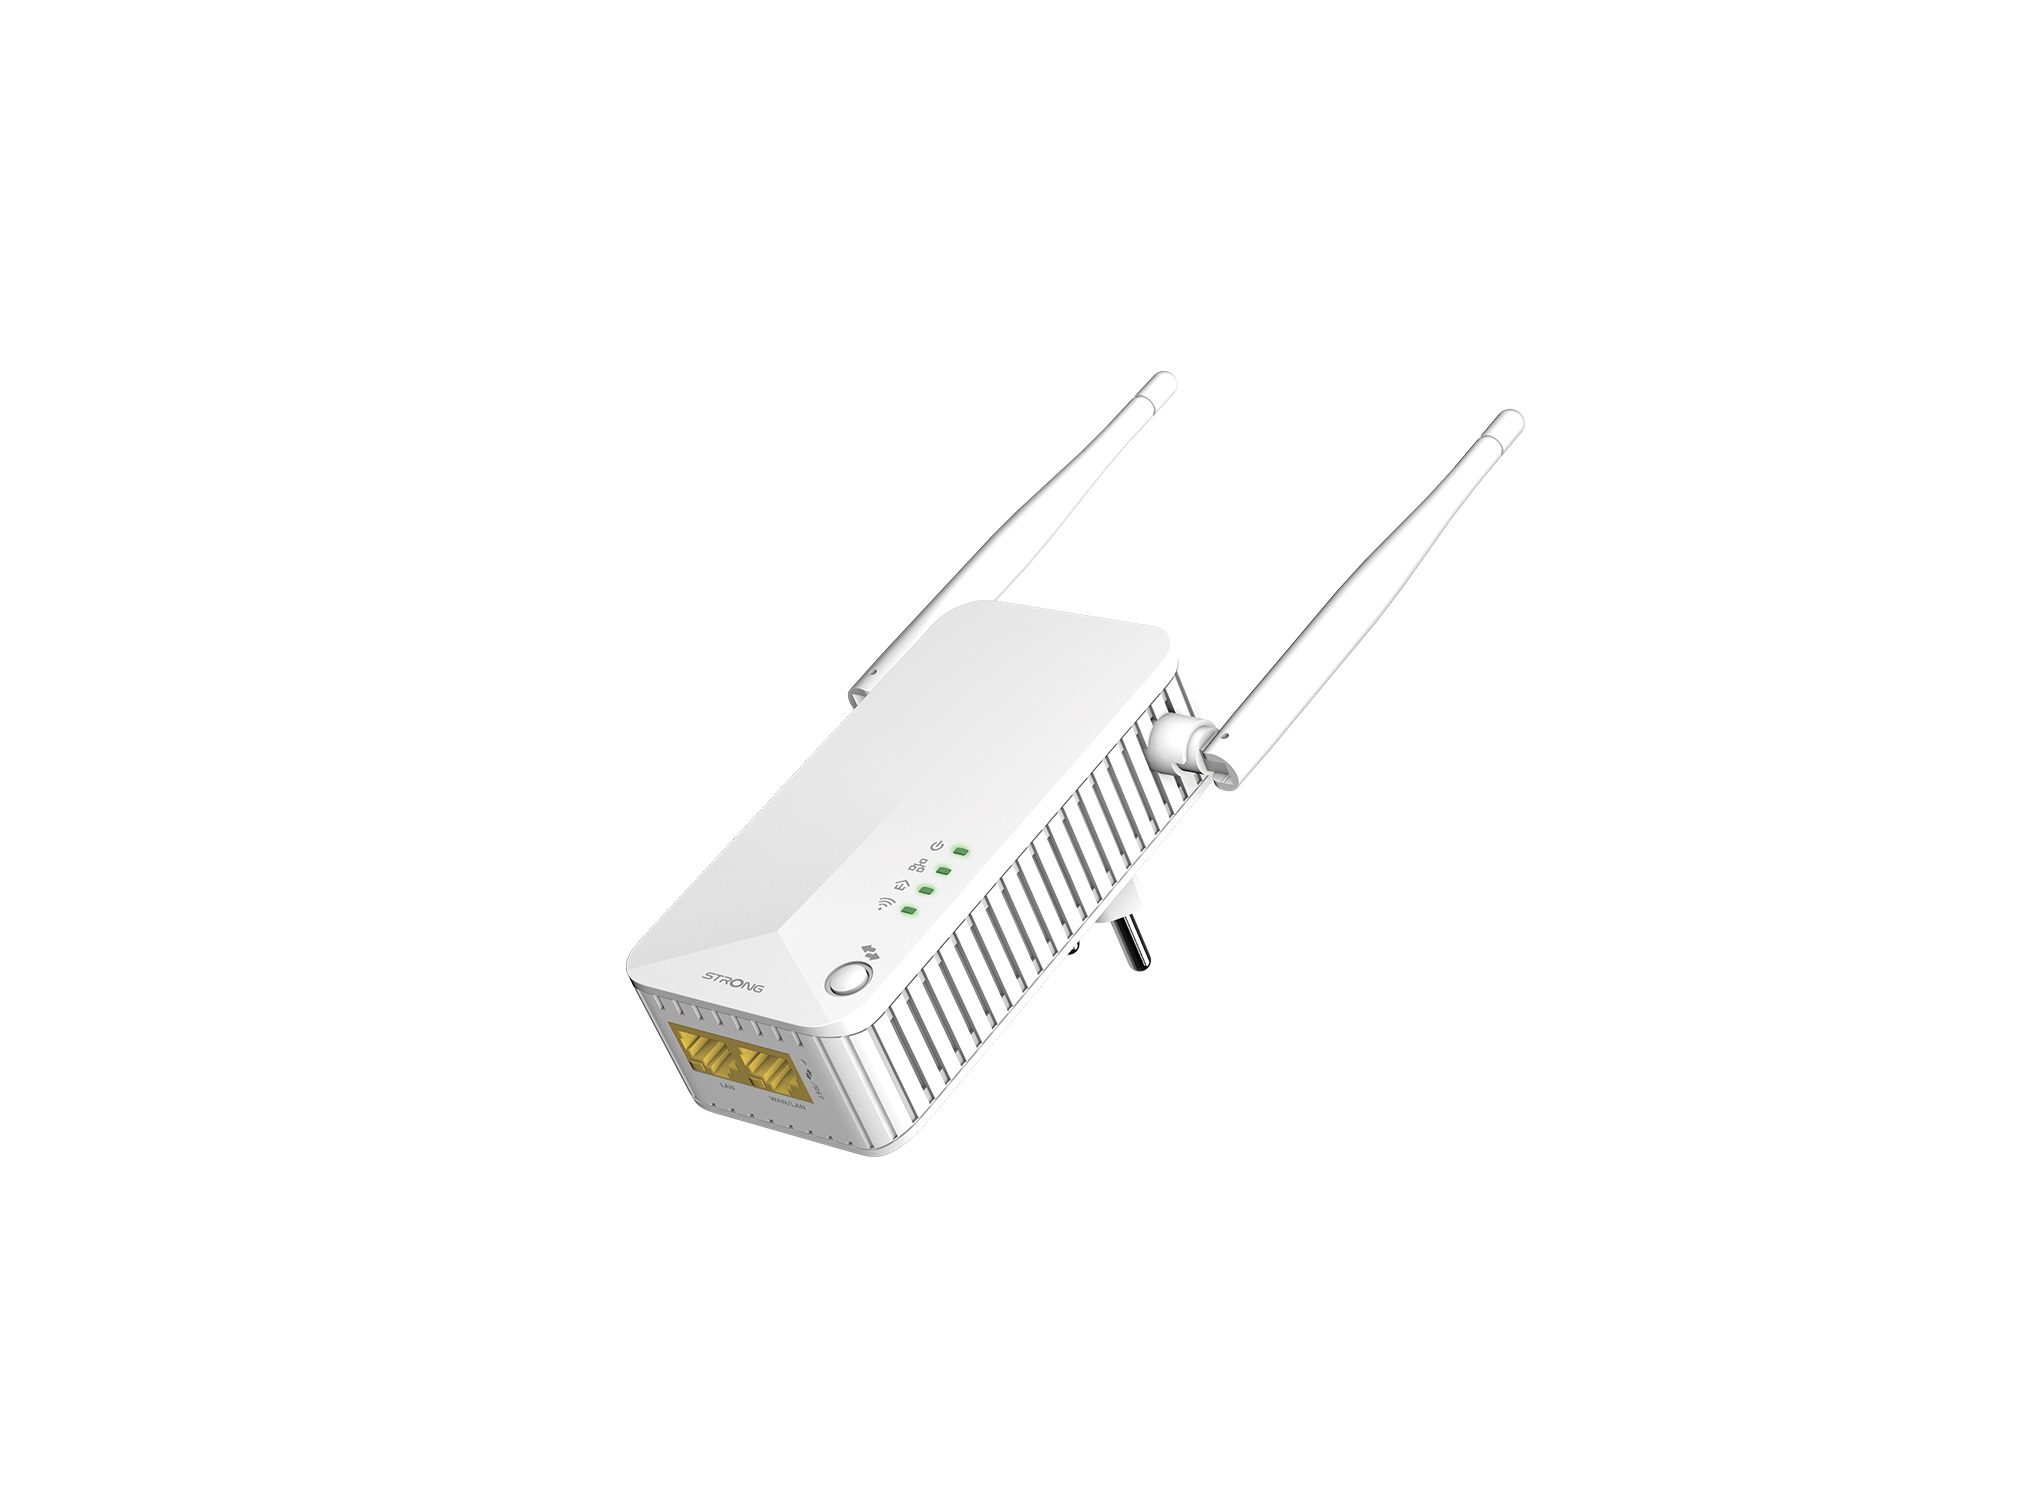 STRONG Powerline 600 600 Powerline Mbit/s LAN Duo WLAN kabelgebunden, EU Set kabellos